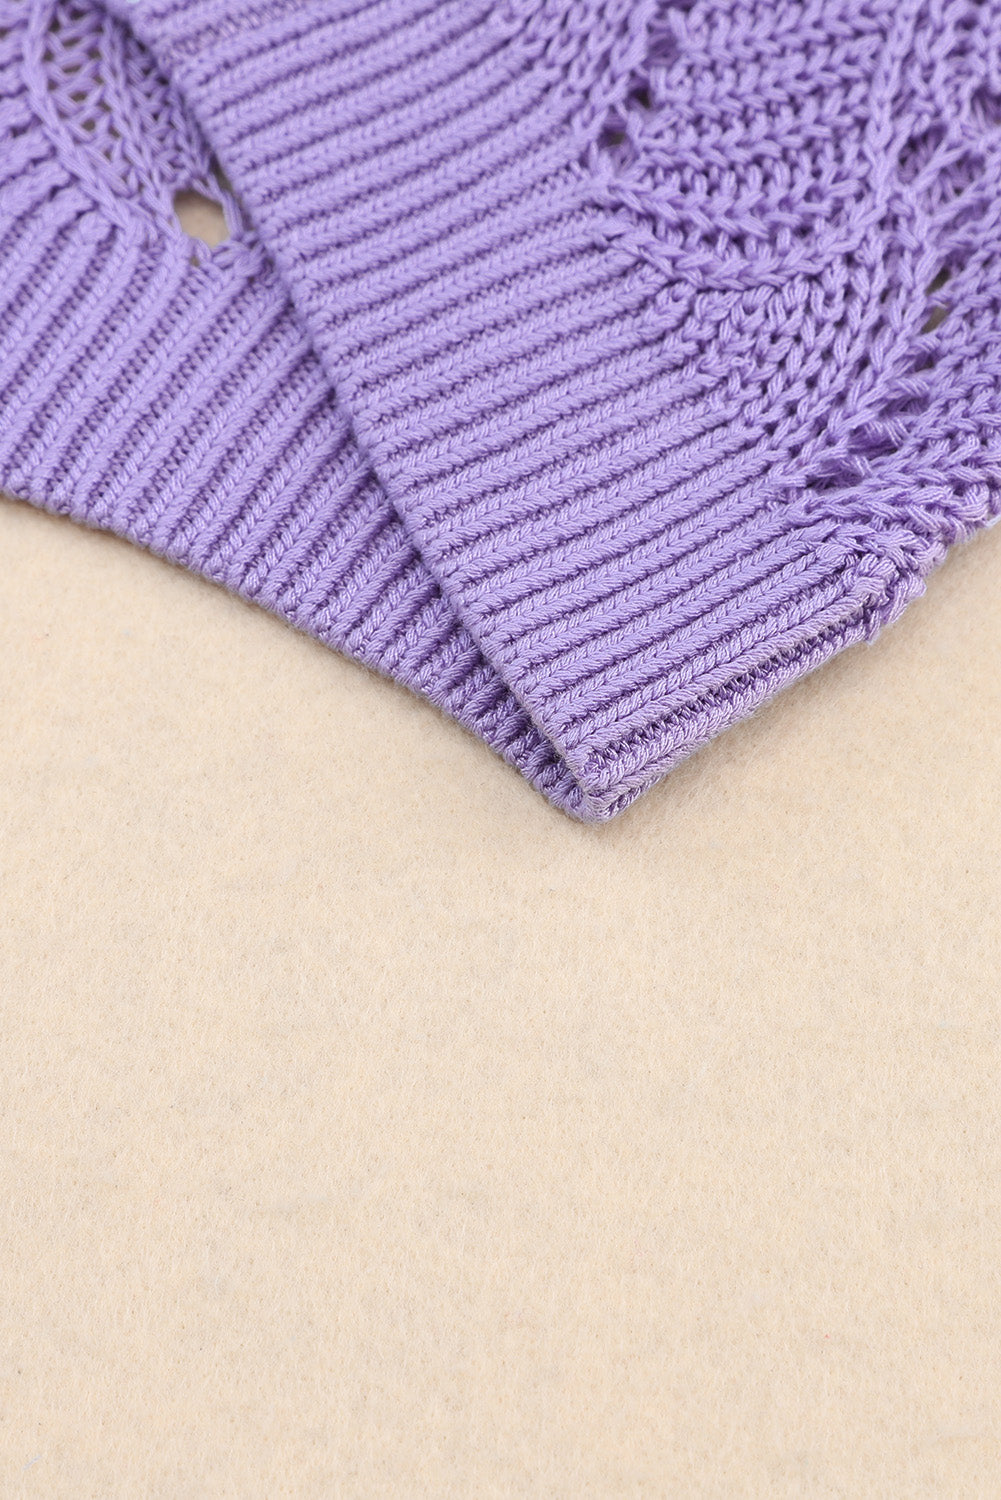 Pull ample tricoté creux à blocs de couleurs rose